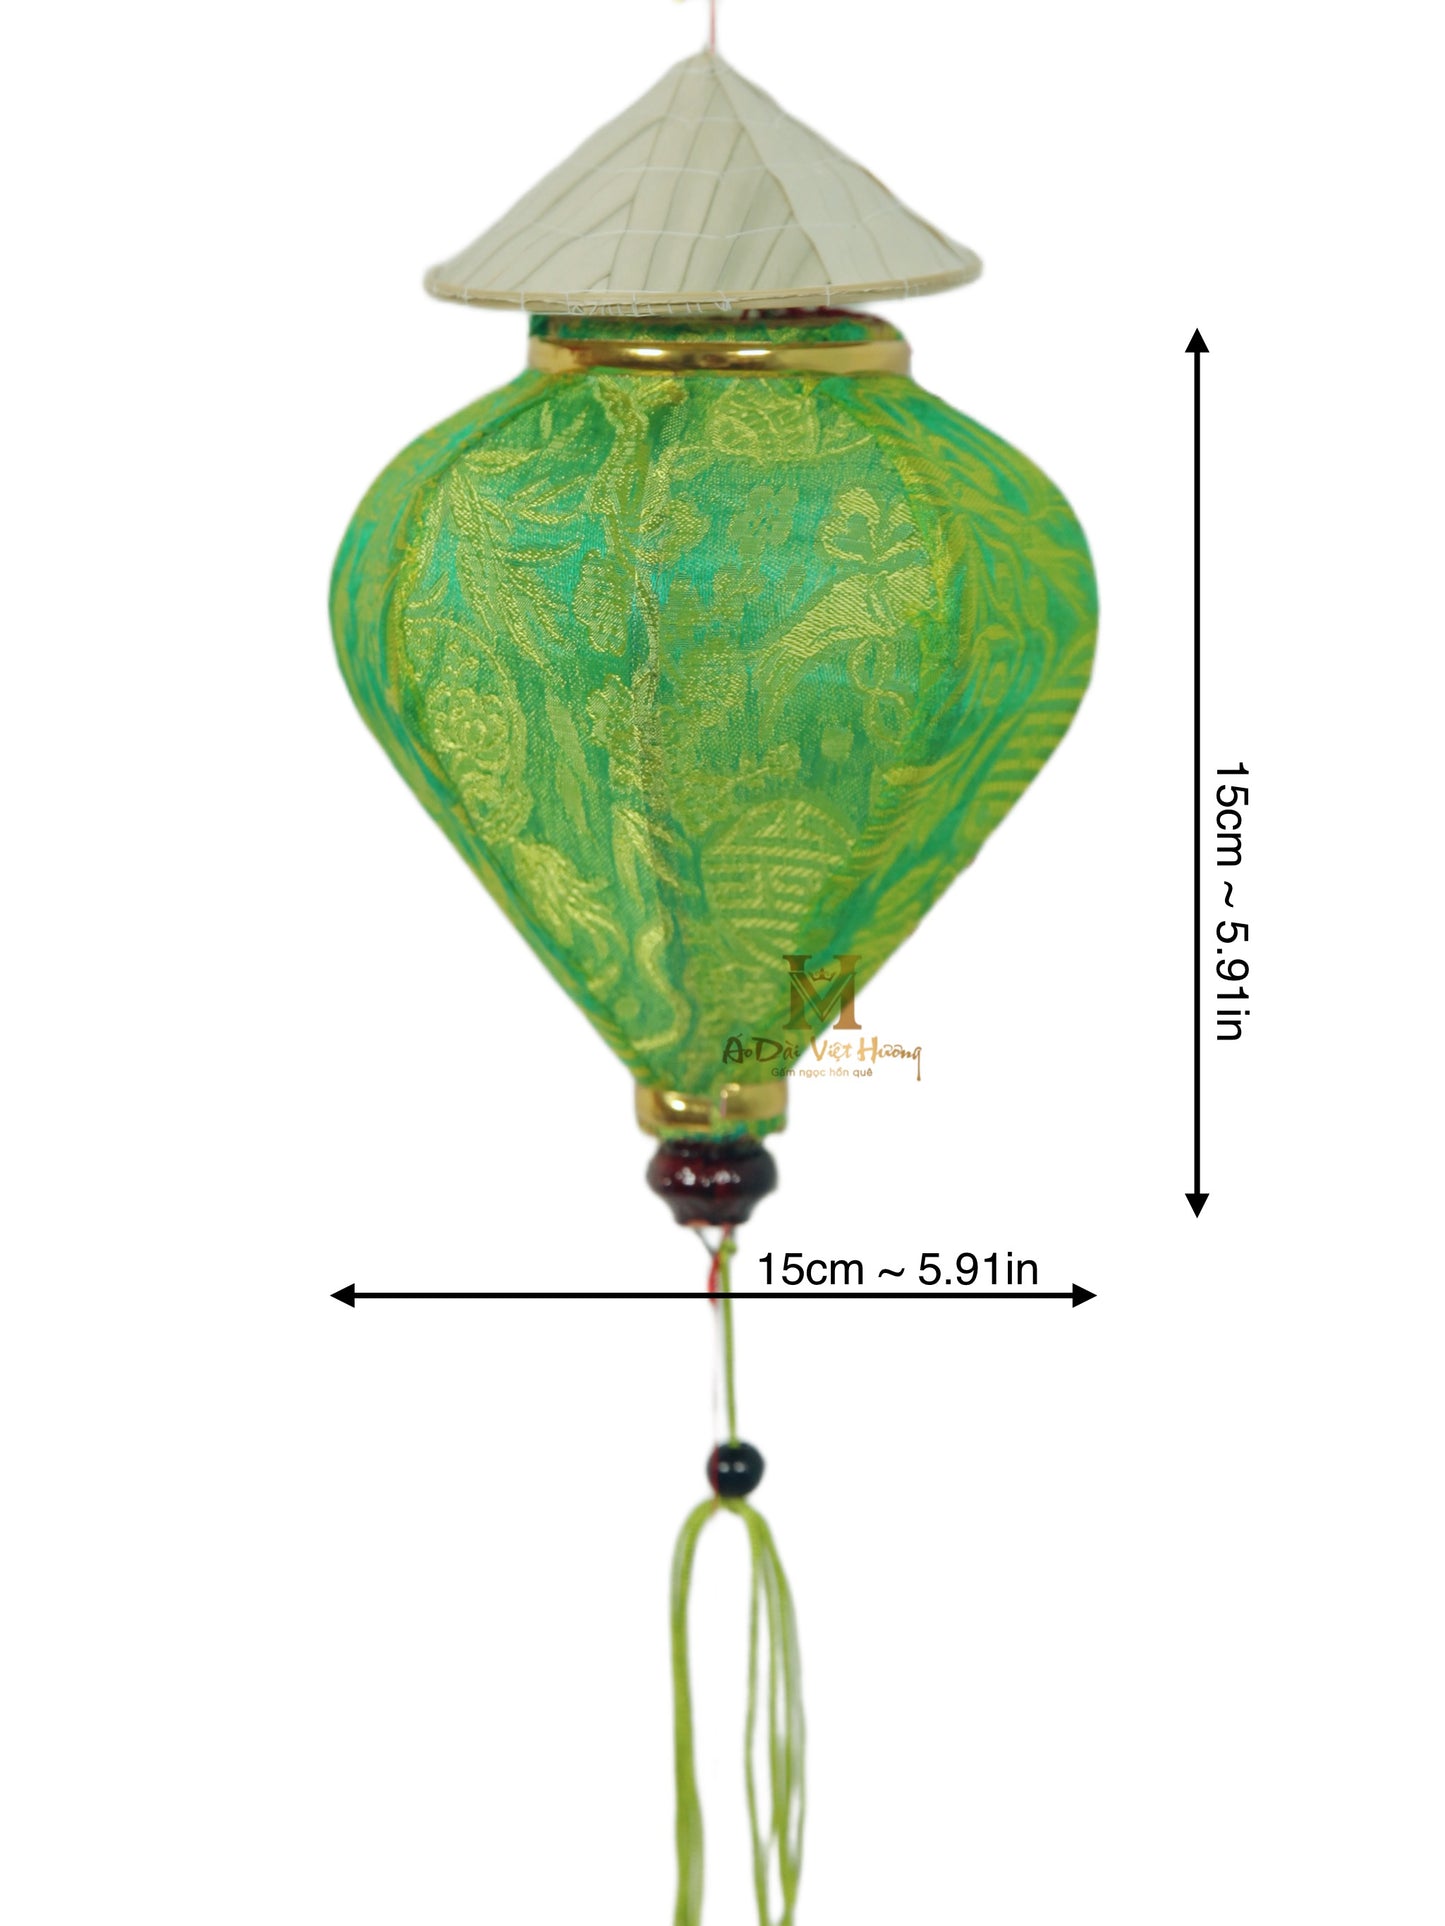 043 - Hoi An Silk 15cm Lantern with Mini Nón Lá